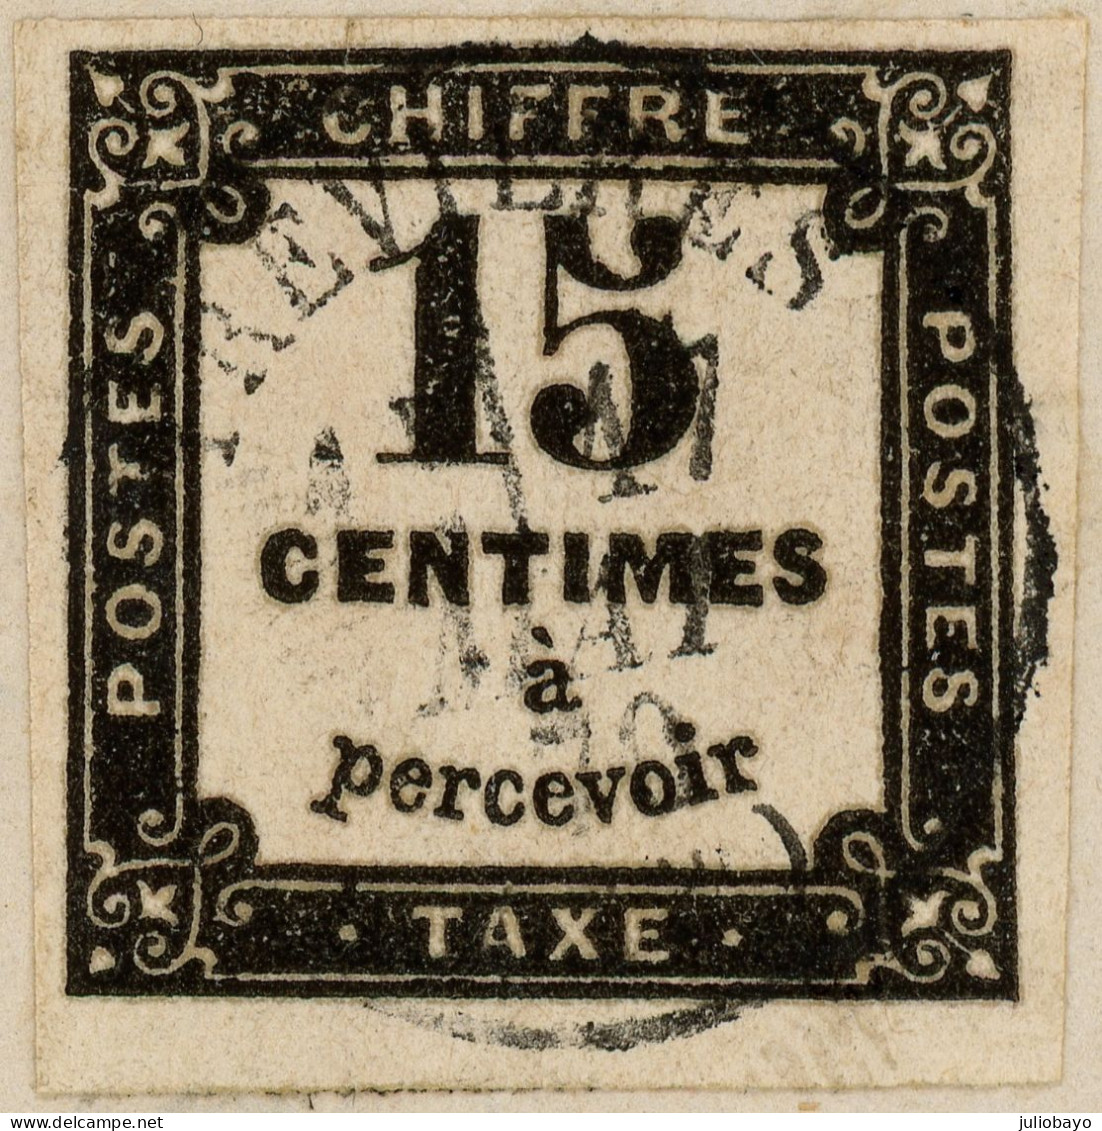 Lot de 4 LAC Trevière Calvados timbre taxe n°3 ET n°5